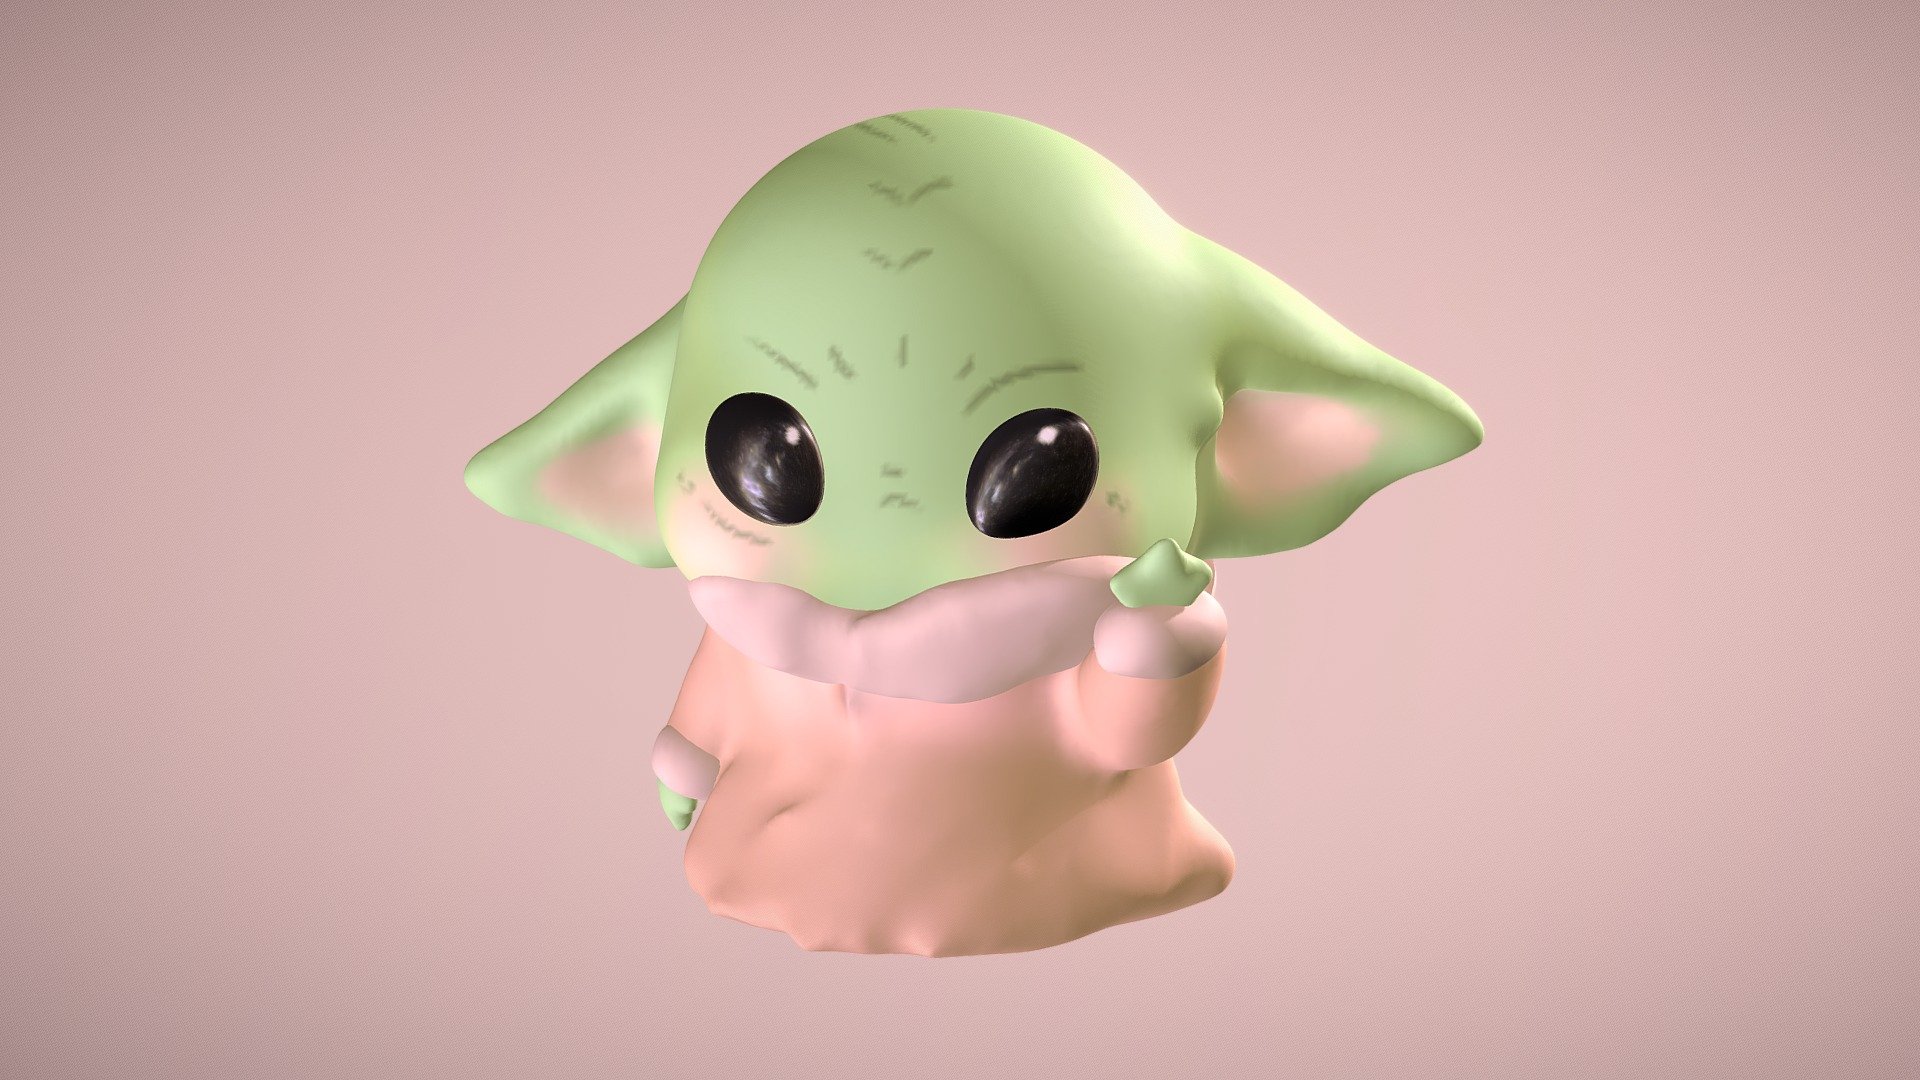 Cute Baby Yoda Download Free 3d Model By Sabrina Zakir Sabrinazakir123 533dd